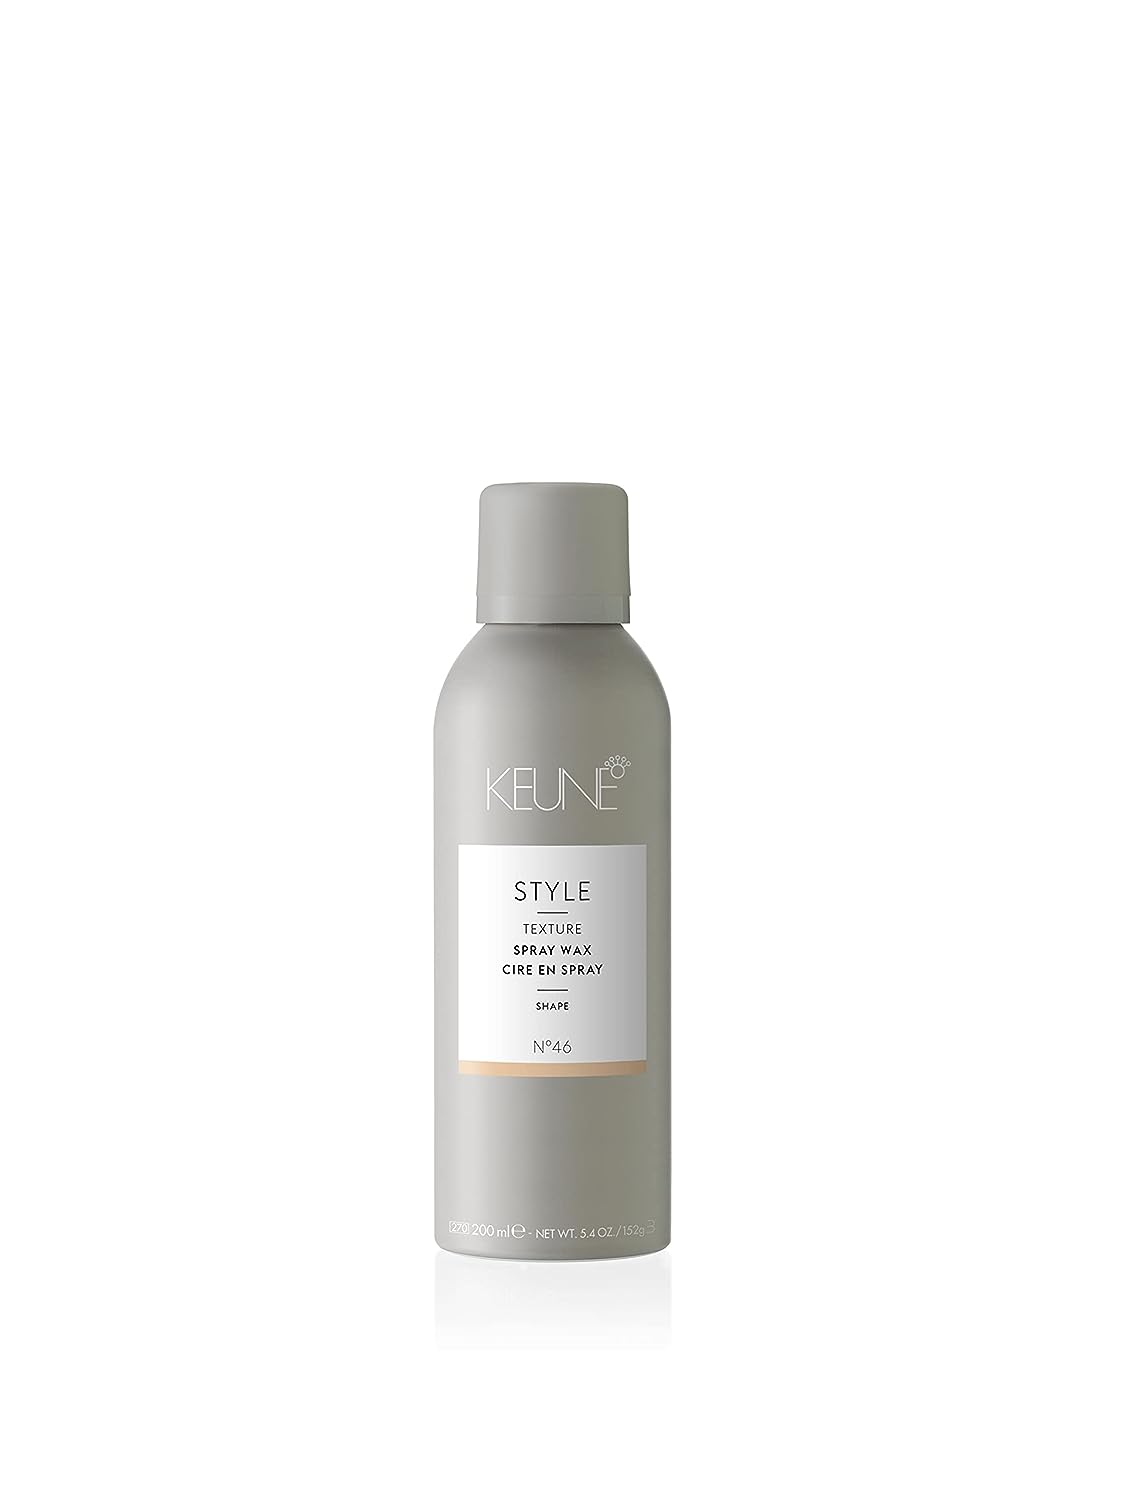 KEUNE Style Spray Wax For Hair Texture and Hold, 6.1 Oz.